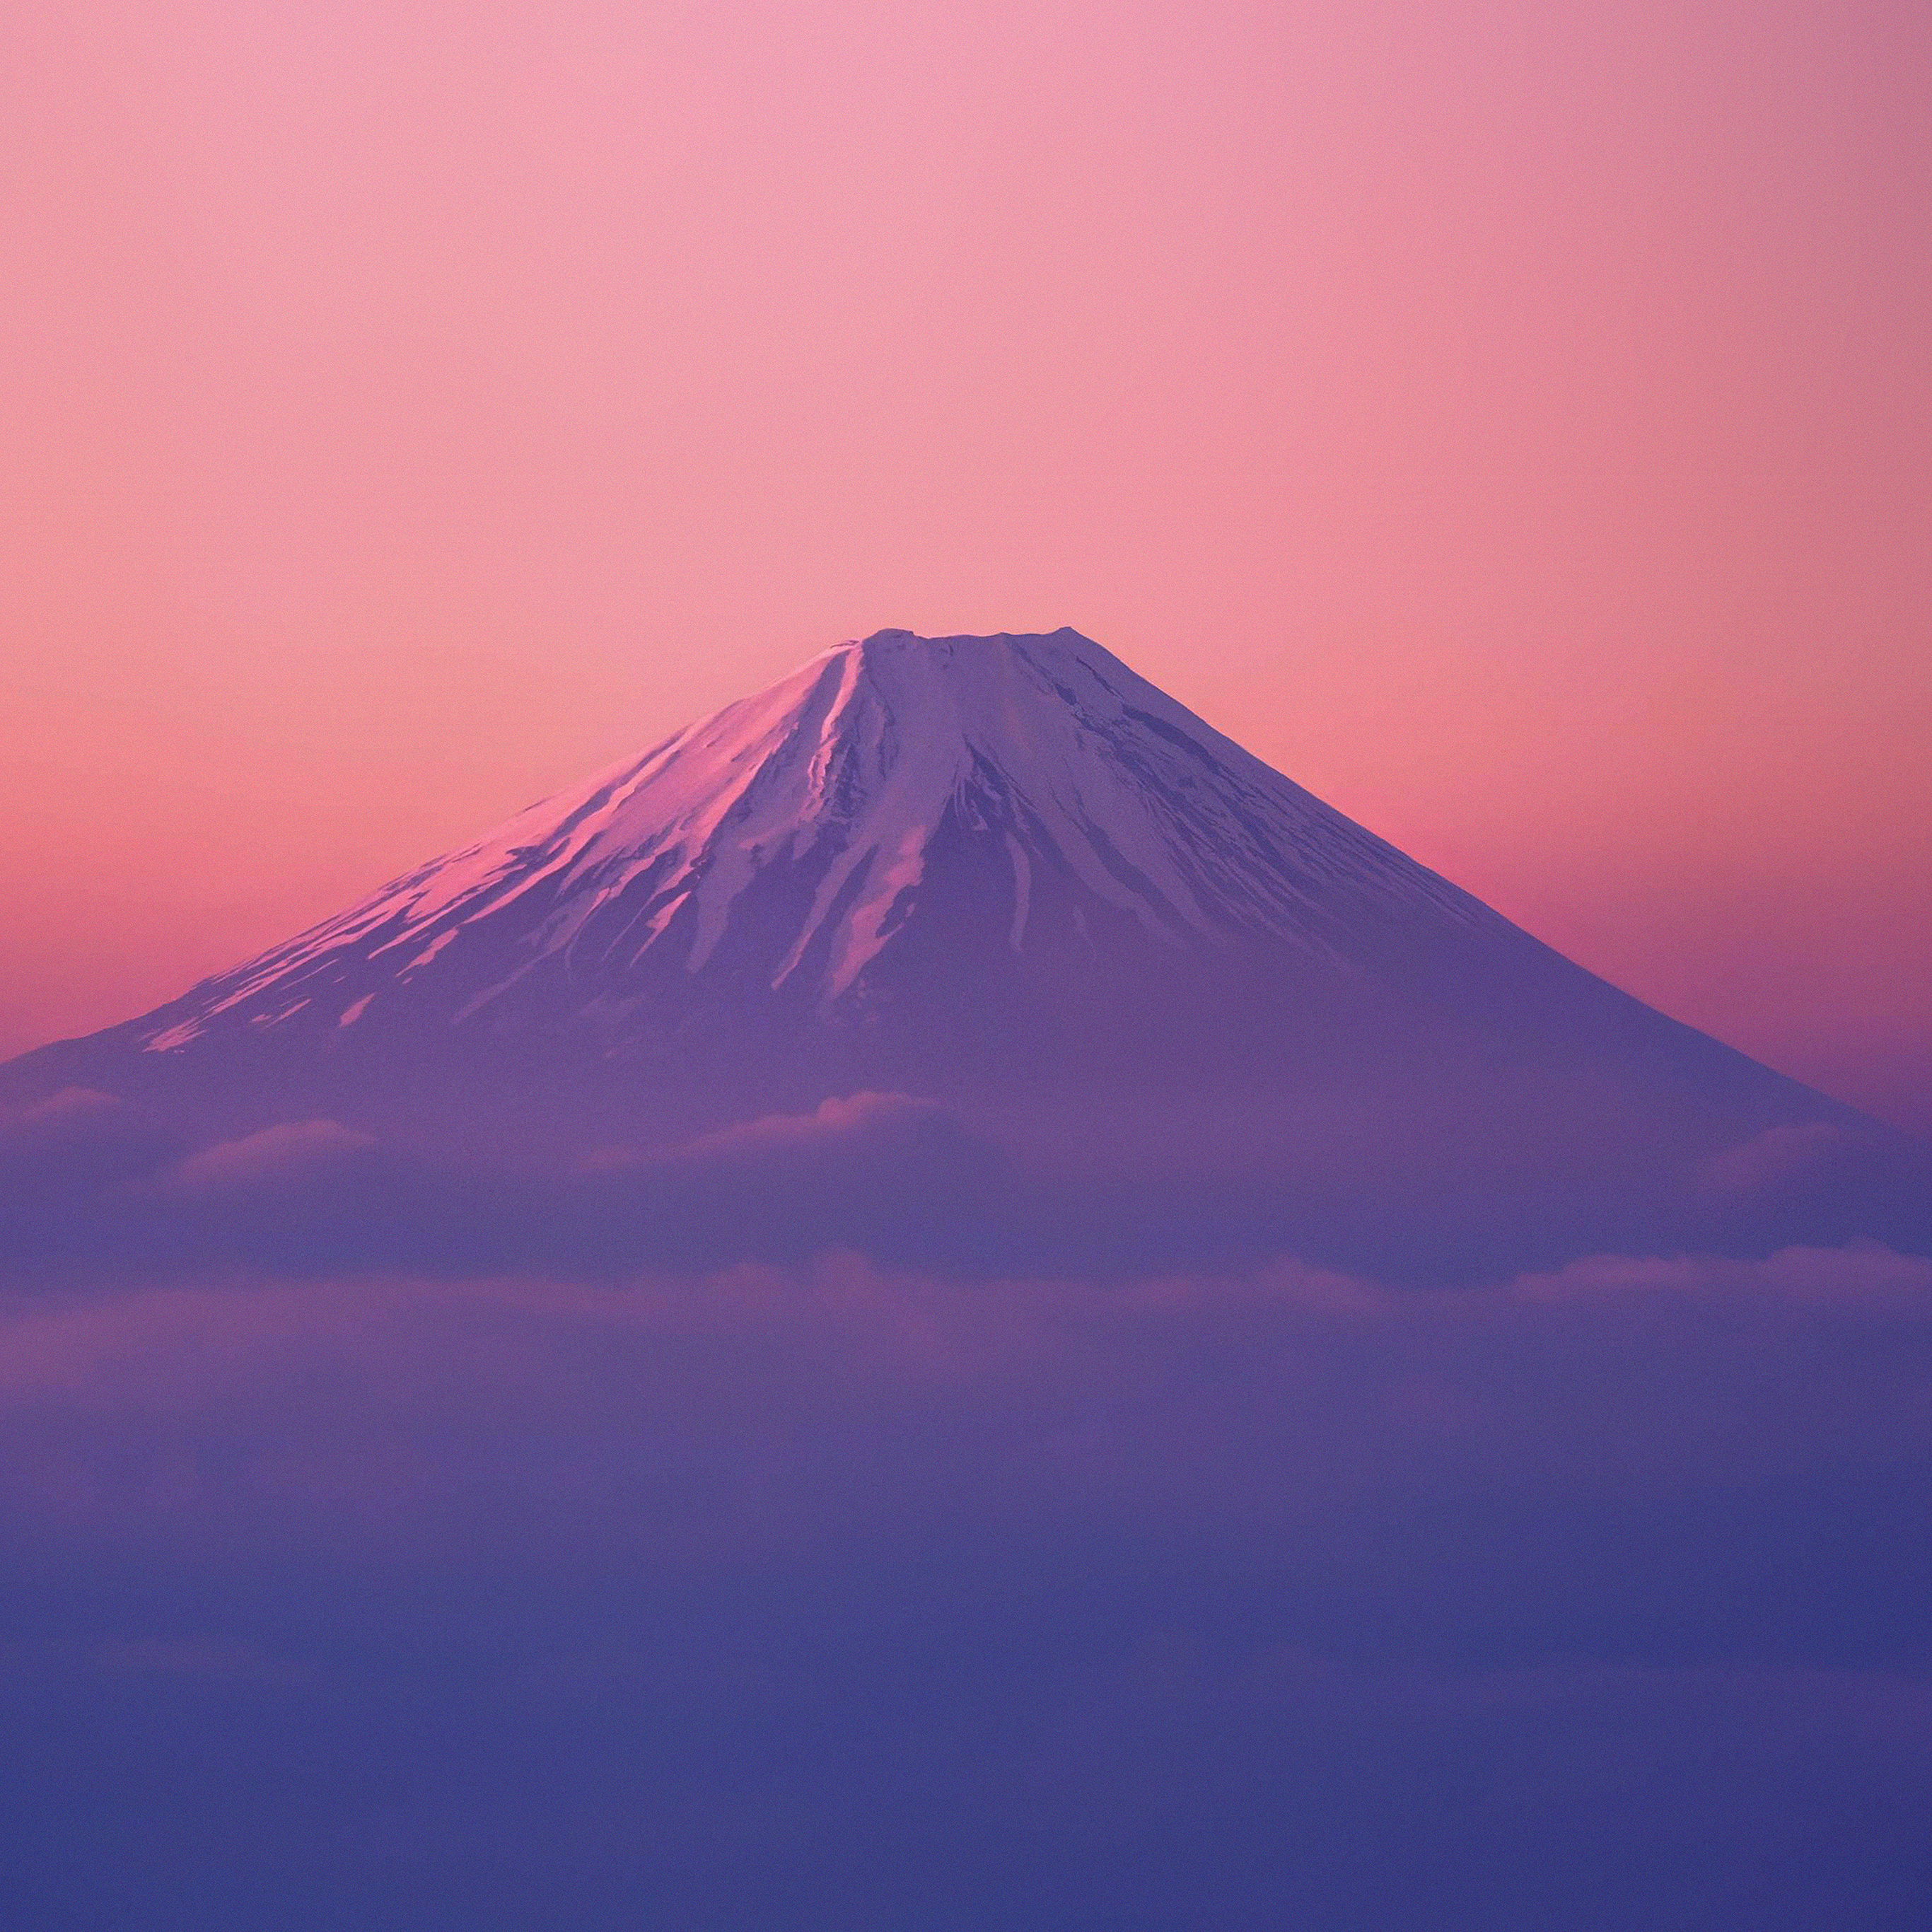 単独の壁紙,空,成層火山,山,ピンク,紫の